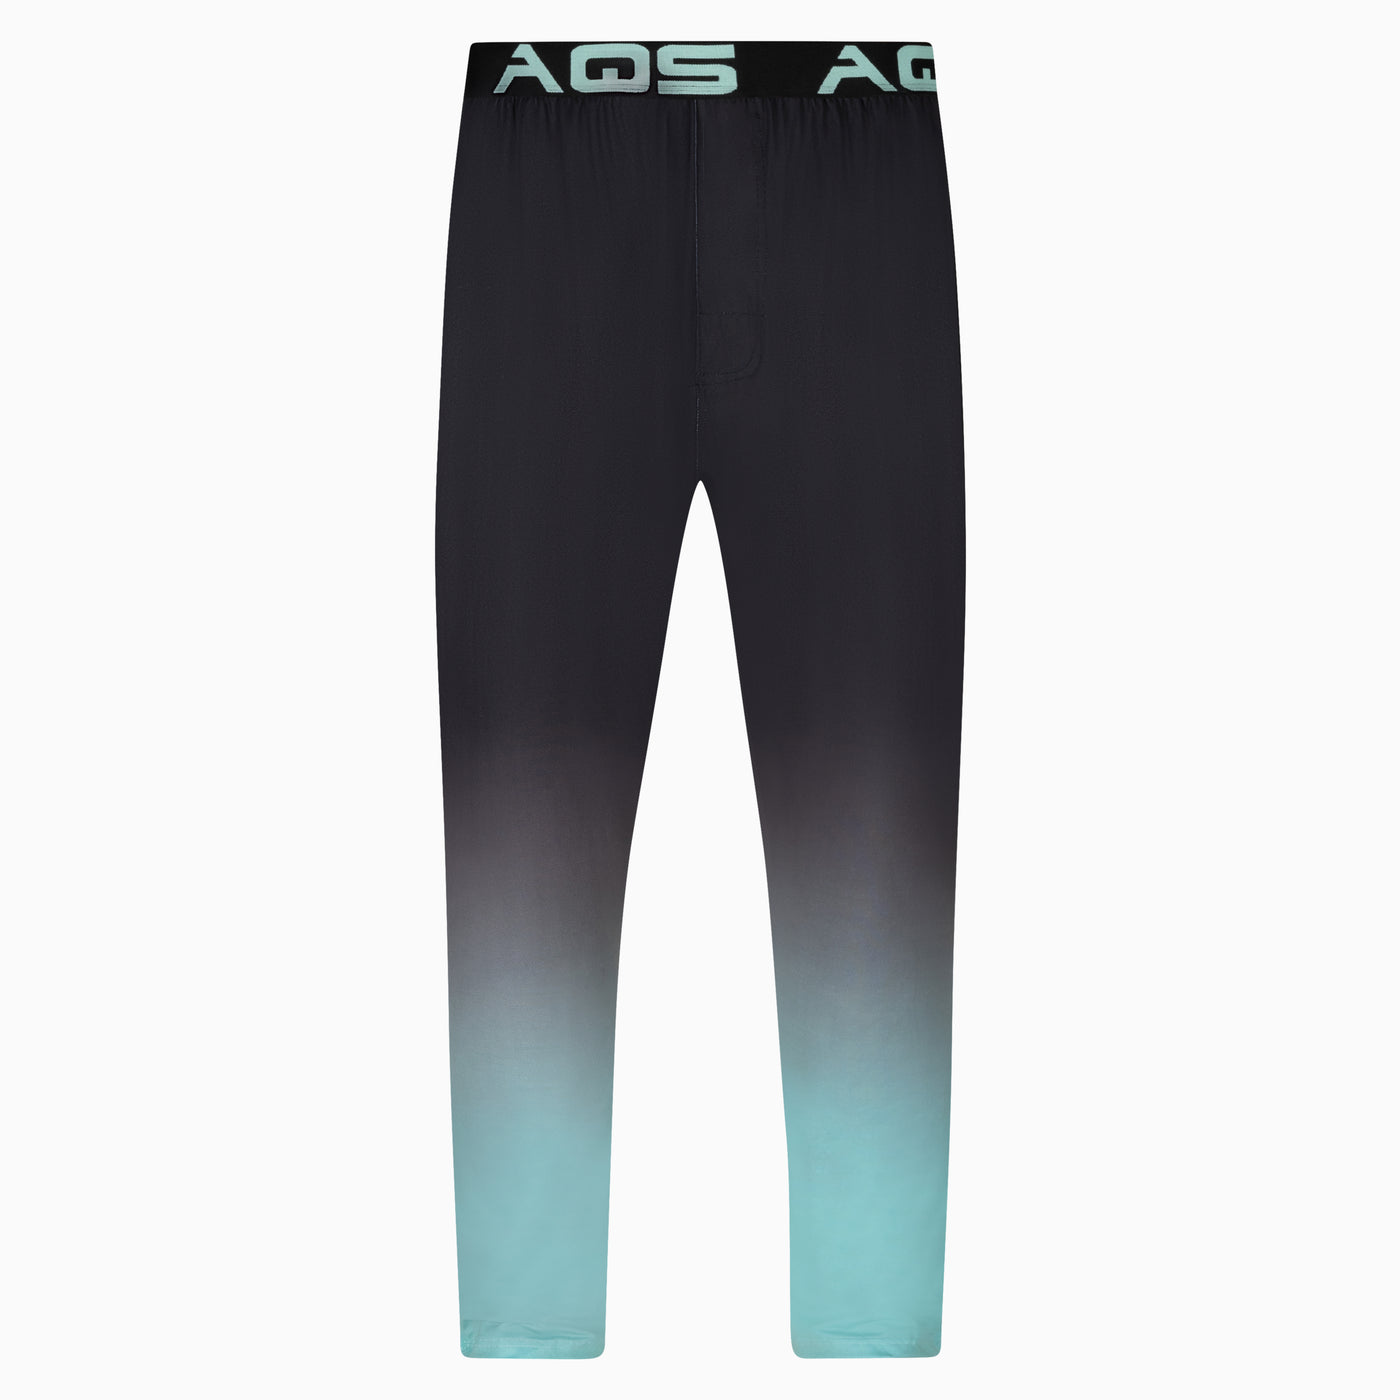 Buy Reel Legends Mens Aquatic Camo Pajama Pants Large Aqua camo grey Online  at desertcartINDIA